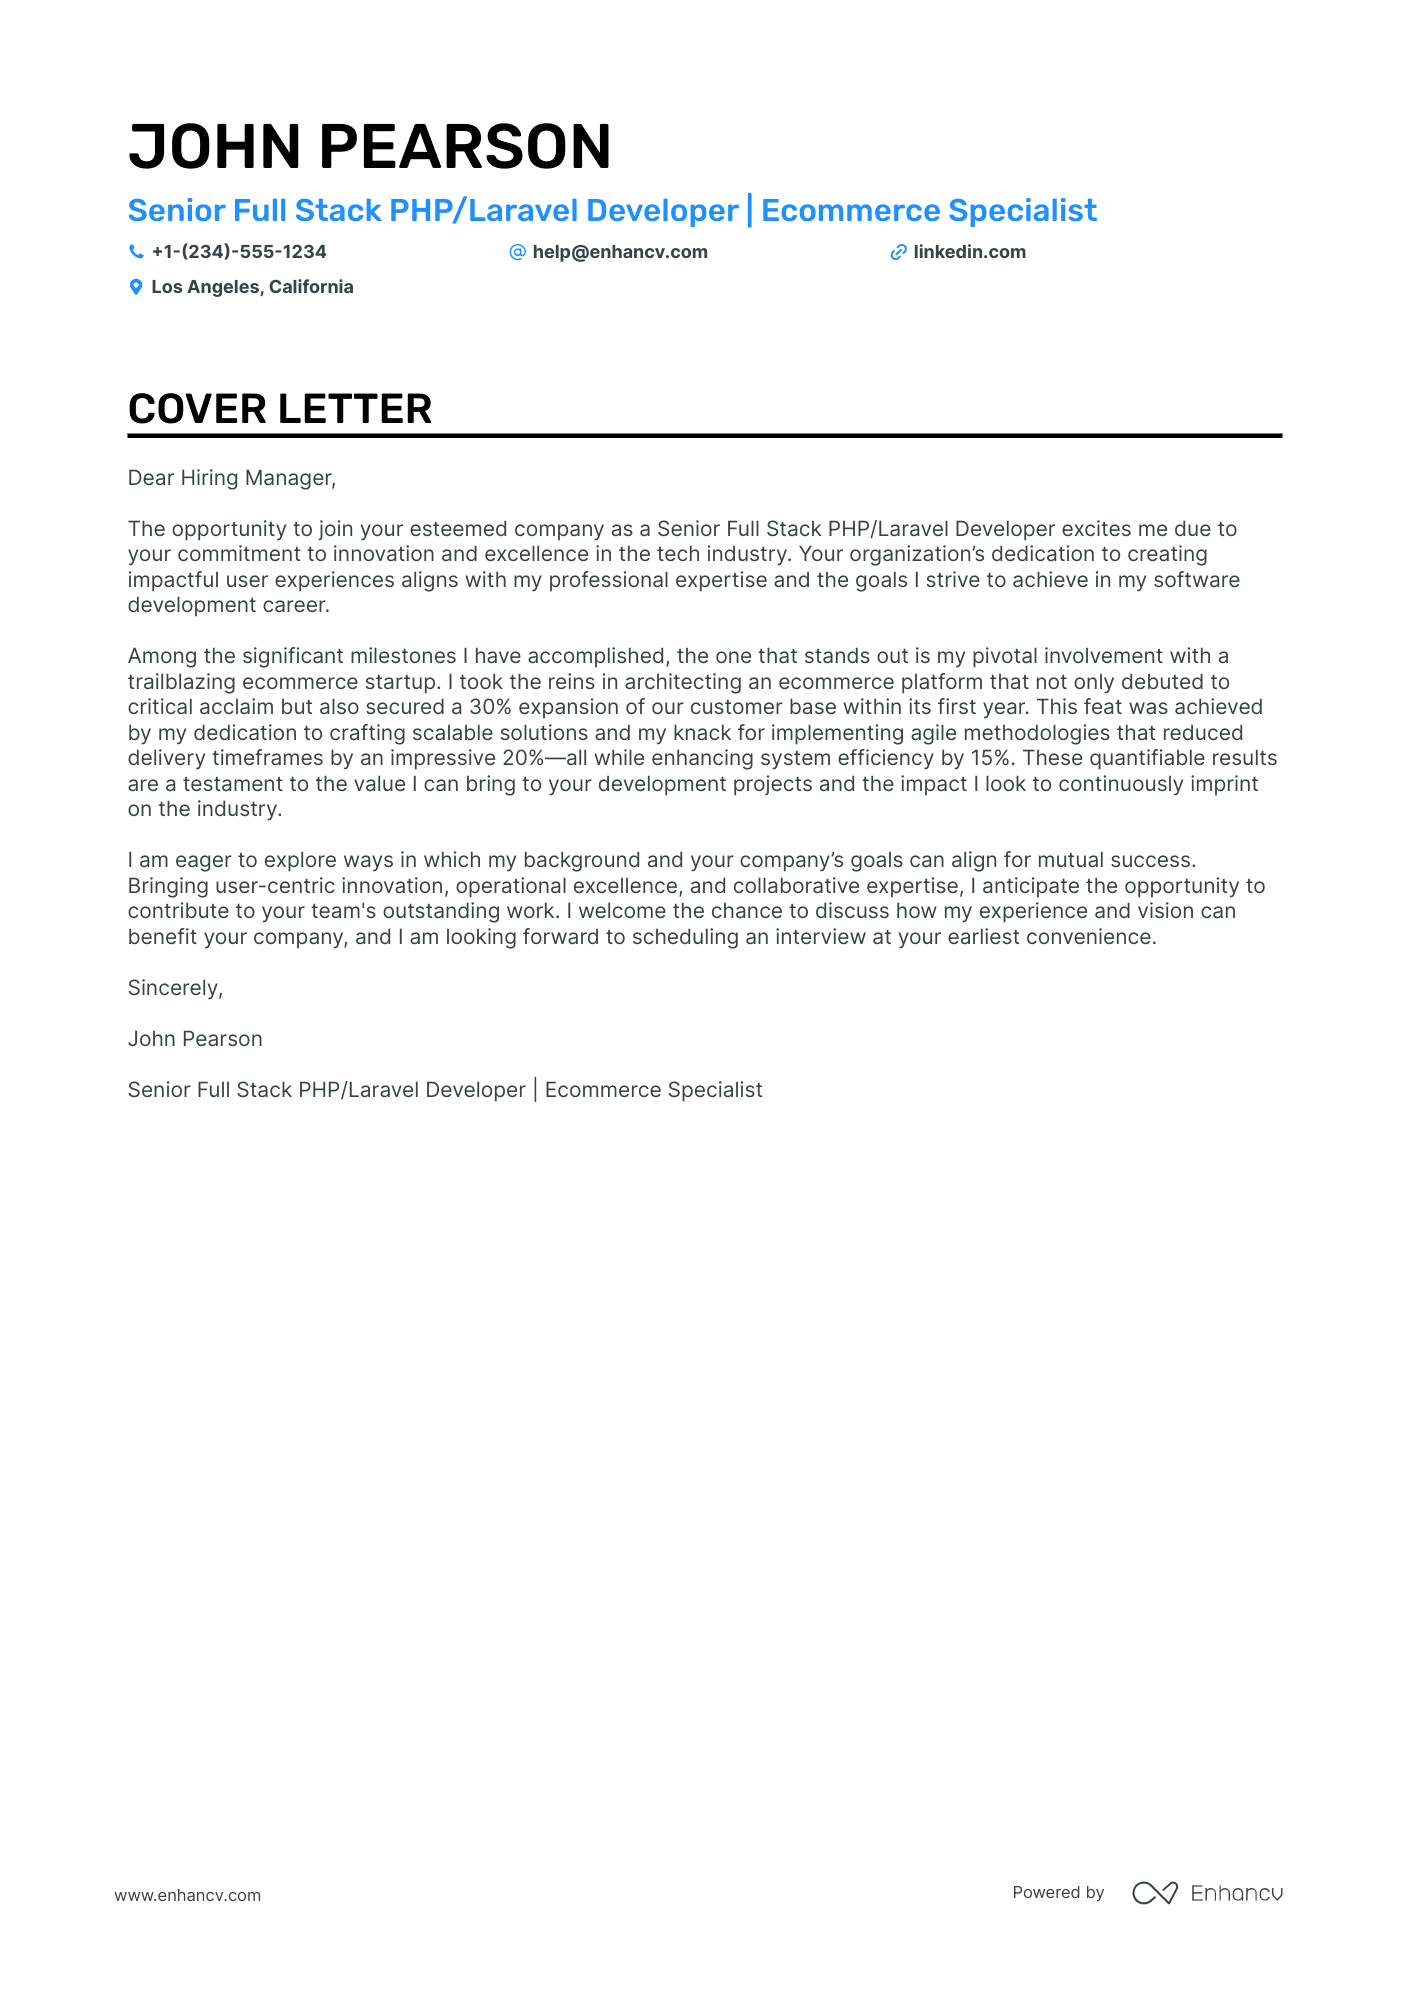 PhP Developer cover letter